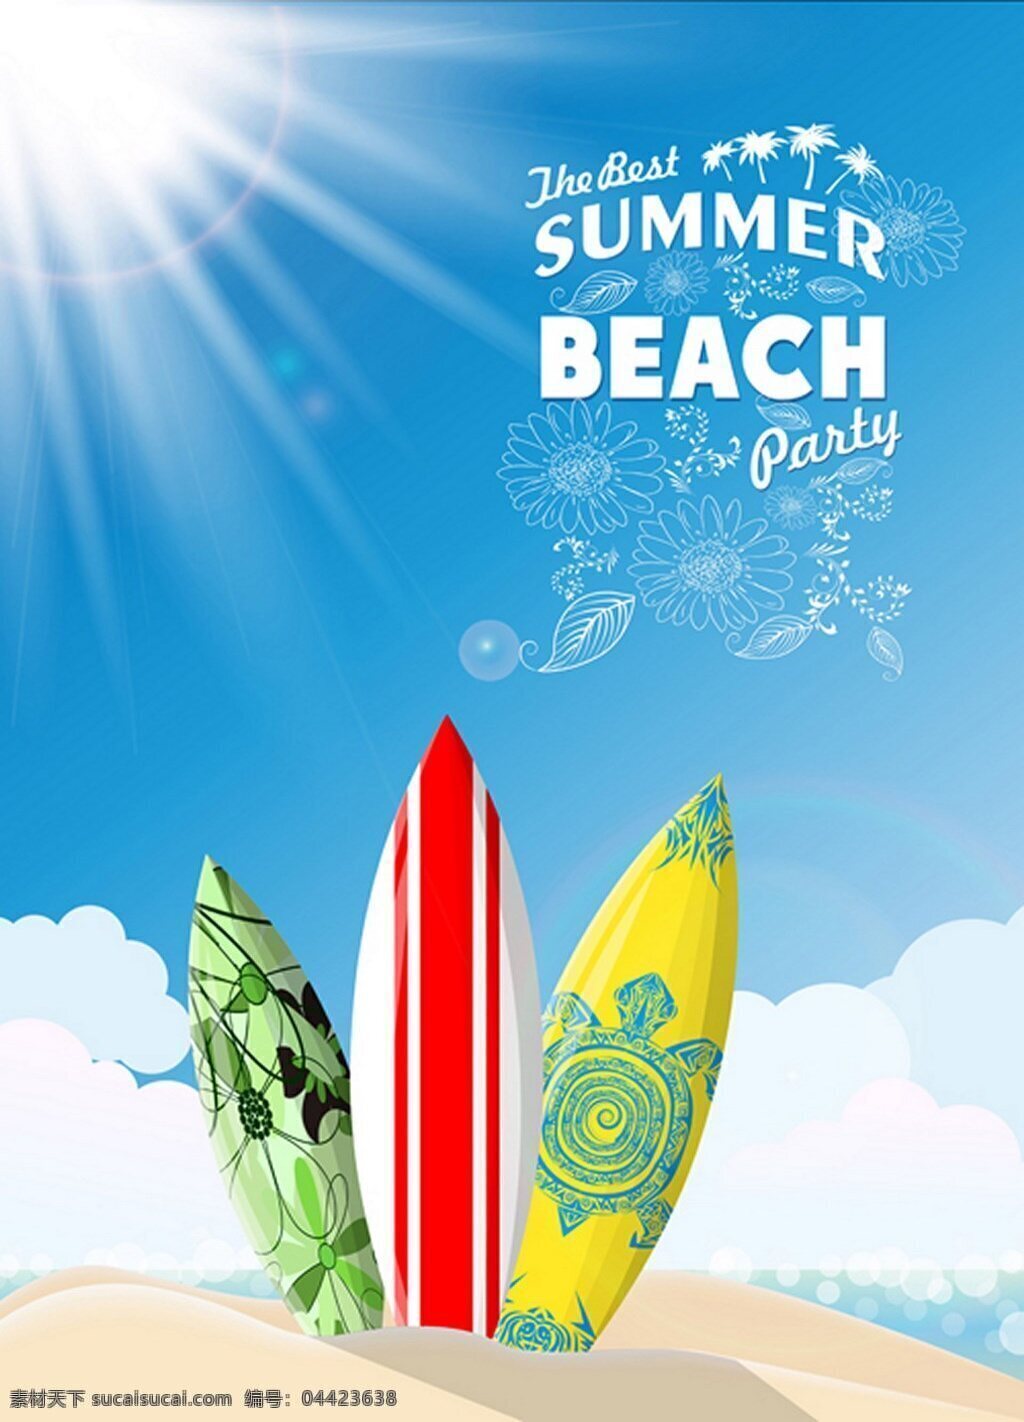 夏日 海滩 度假 冲浪板 背景 图 广告背景 背景素材 广告 大海 沙滩 冲浪 漂亮 蓝色天空 太阳 白云 运动 健身